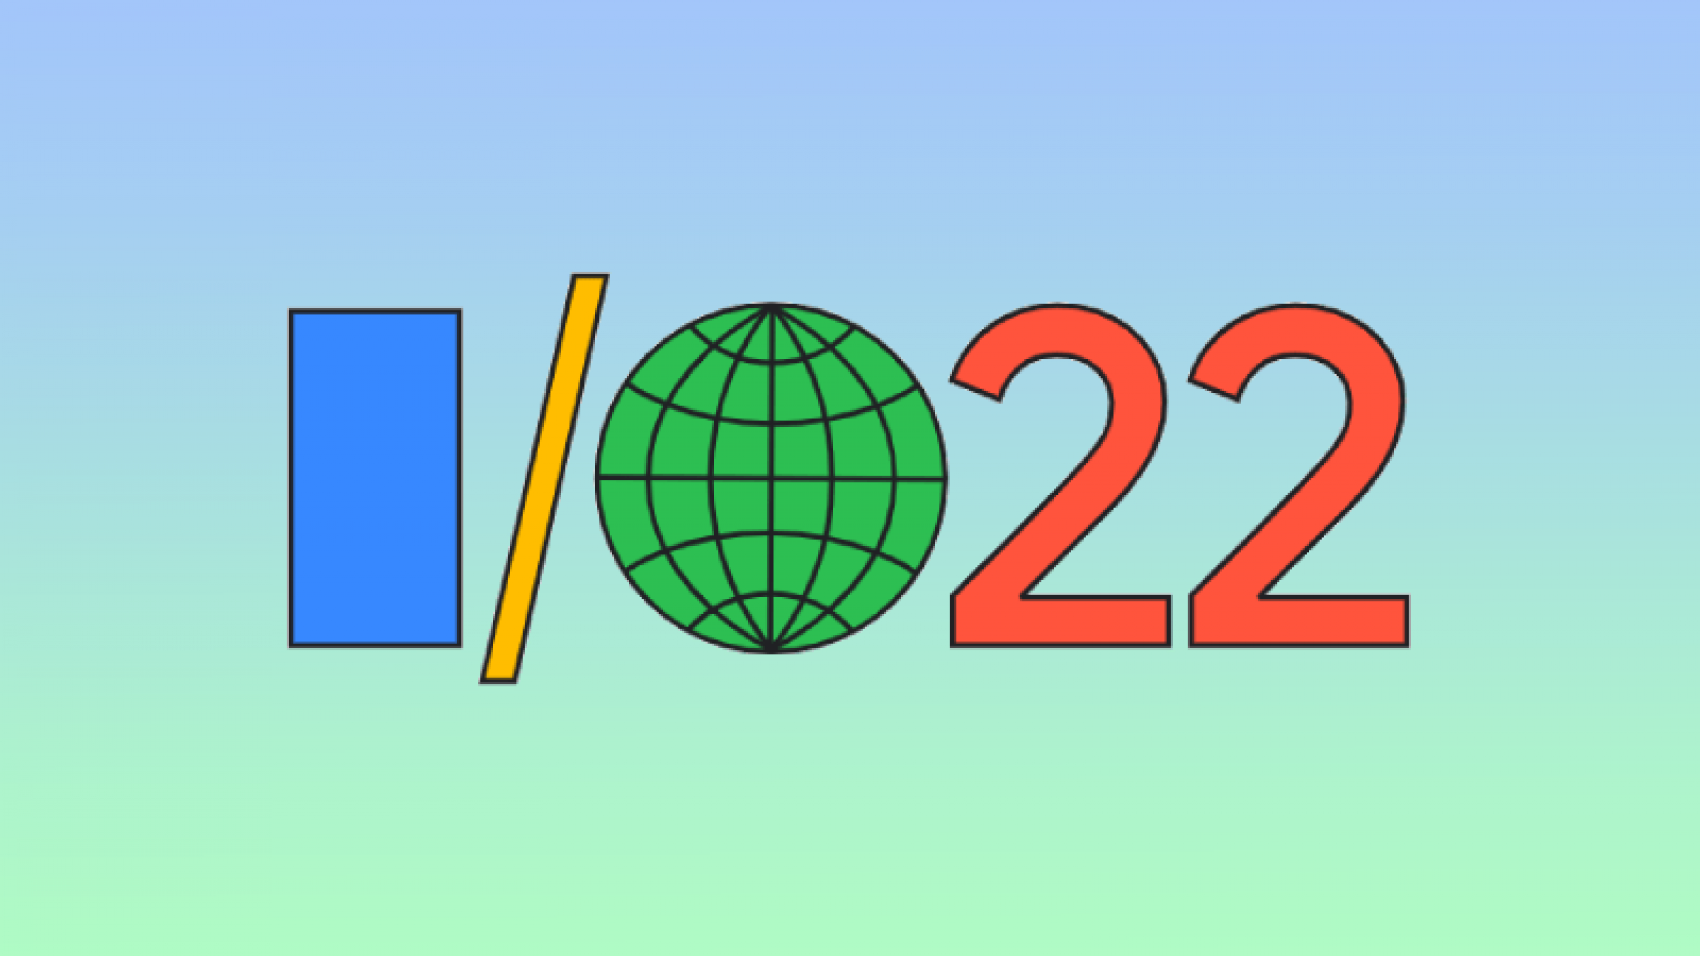 Прошла конференция Google I/O 2022: анонс новых устройств и функций